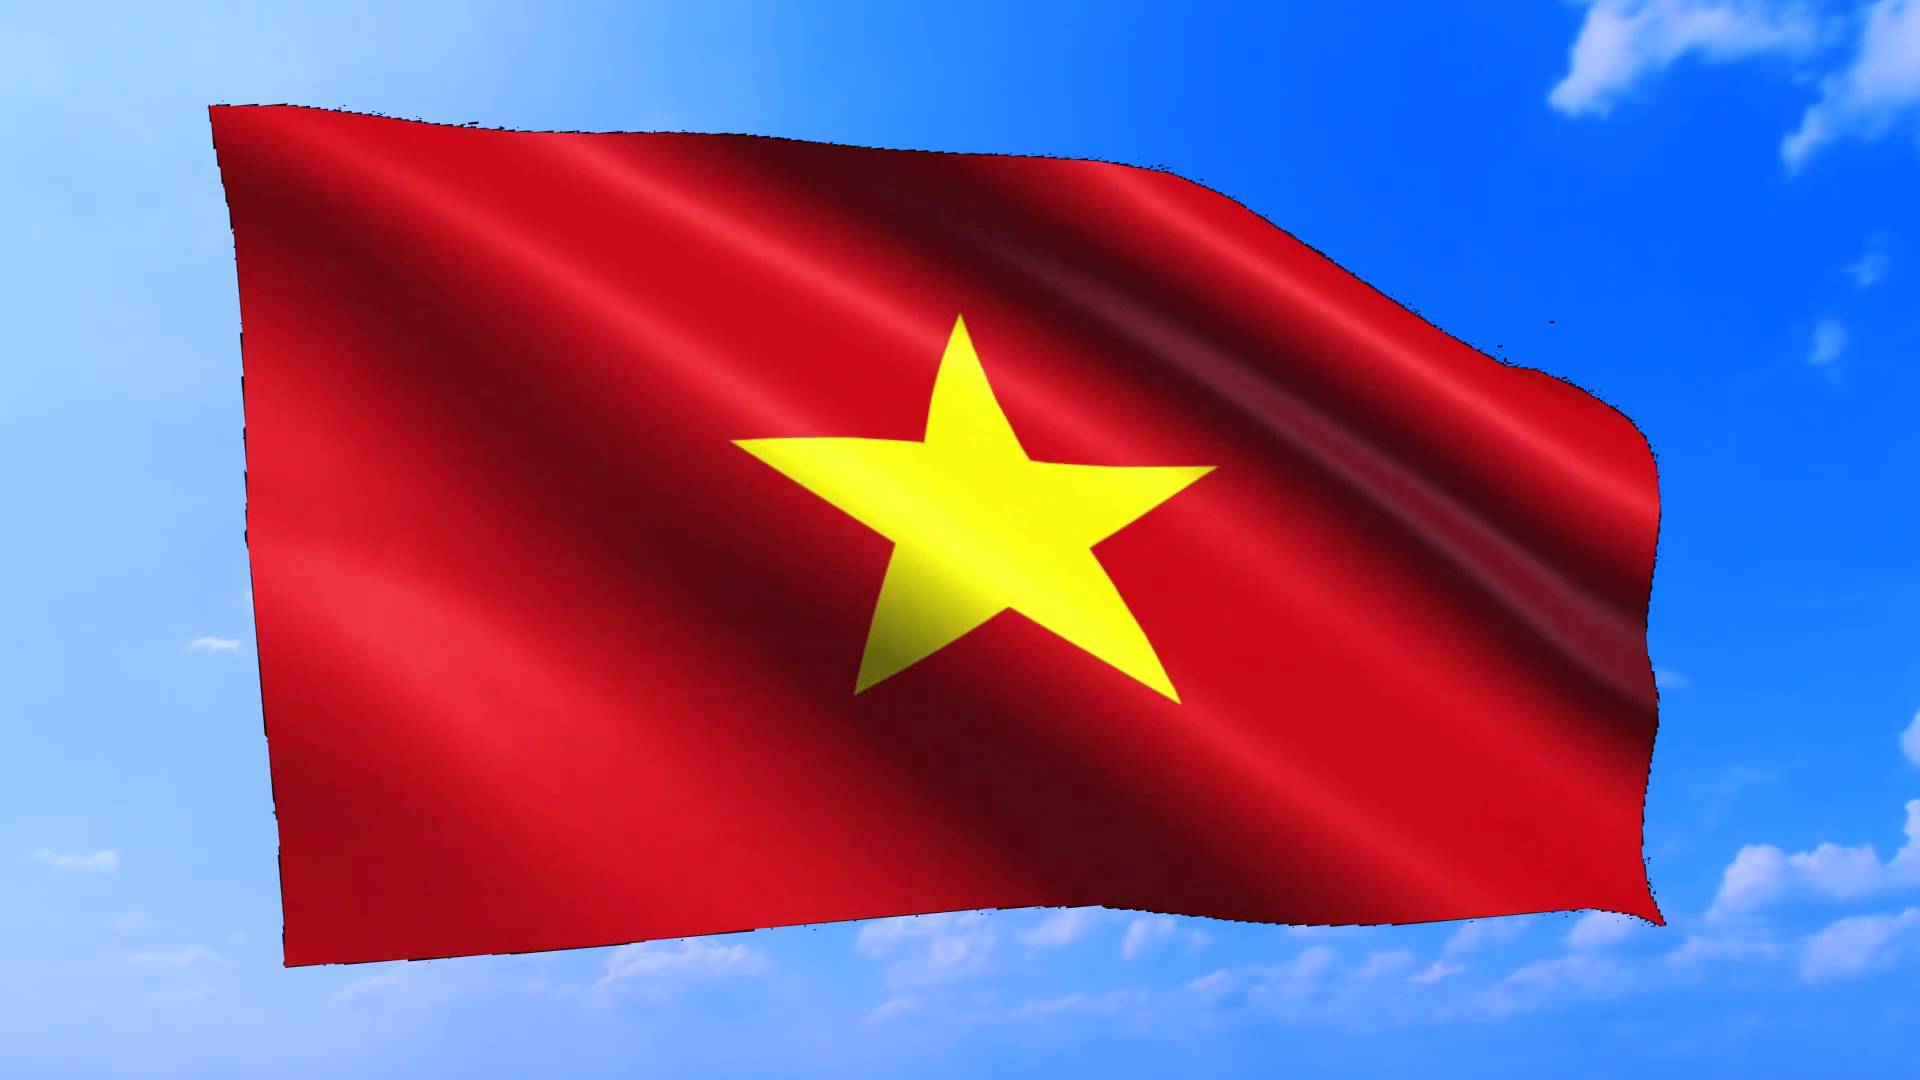 Bức ảnh cờ đỏ sao vàng là một biểu tượng của quốc gia Việt Nam. Khi nhìn vào cờ, ta có thể nhìn thấy sự kiên trung và khả năng đoàn kết của người dân Việt Nam. Hãy thưởng thức những hình ảnh tuyệt vời này và cảm nhận được tình yêu đối với quê hương.